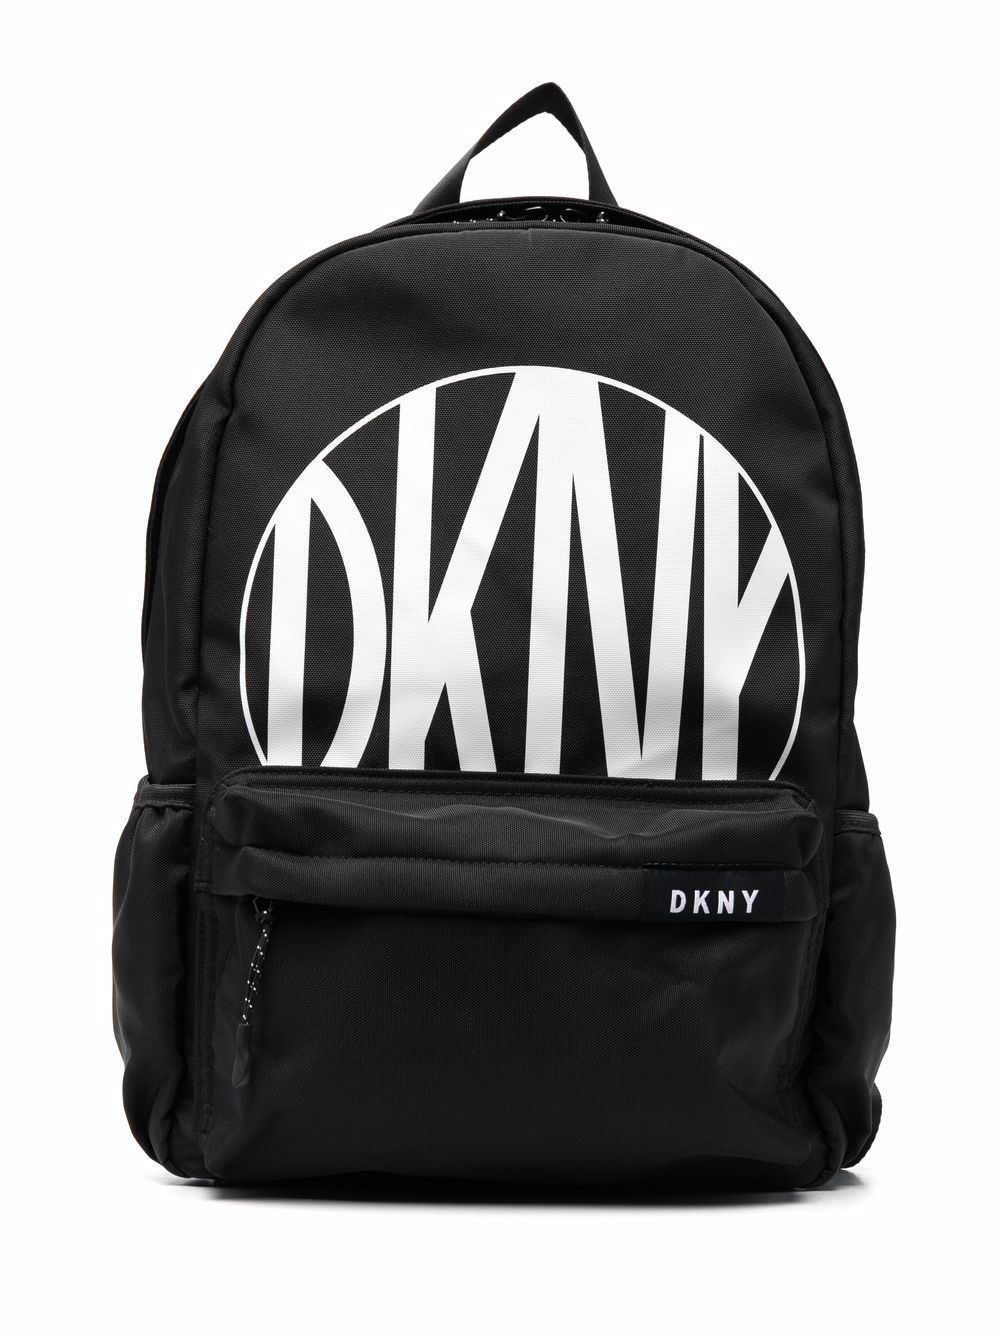 фото Dkny kids рюкзак с логотипом